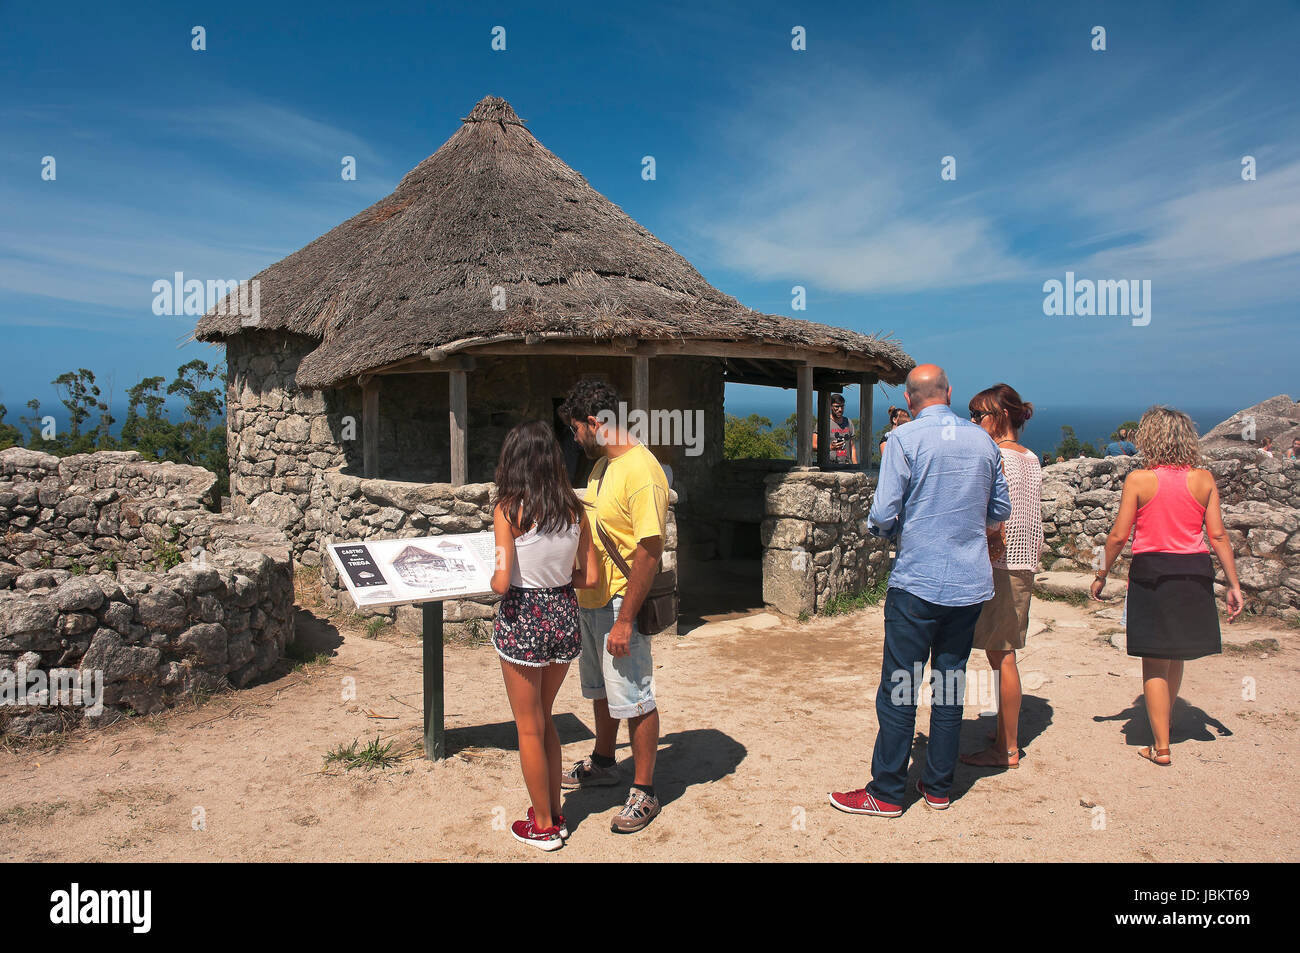 El asentamiento celta de 'Castro de Santa Tecla' - primer siglo A.C., La Guardia, Pontevedra, en la región de Galicia, España, Europa Foto de stock